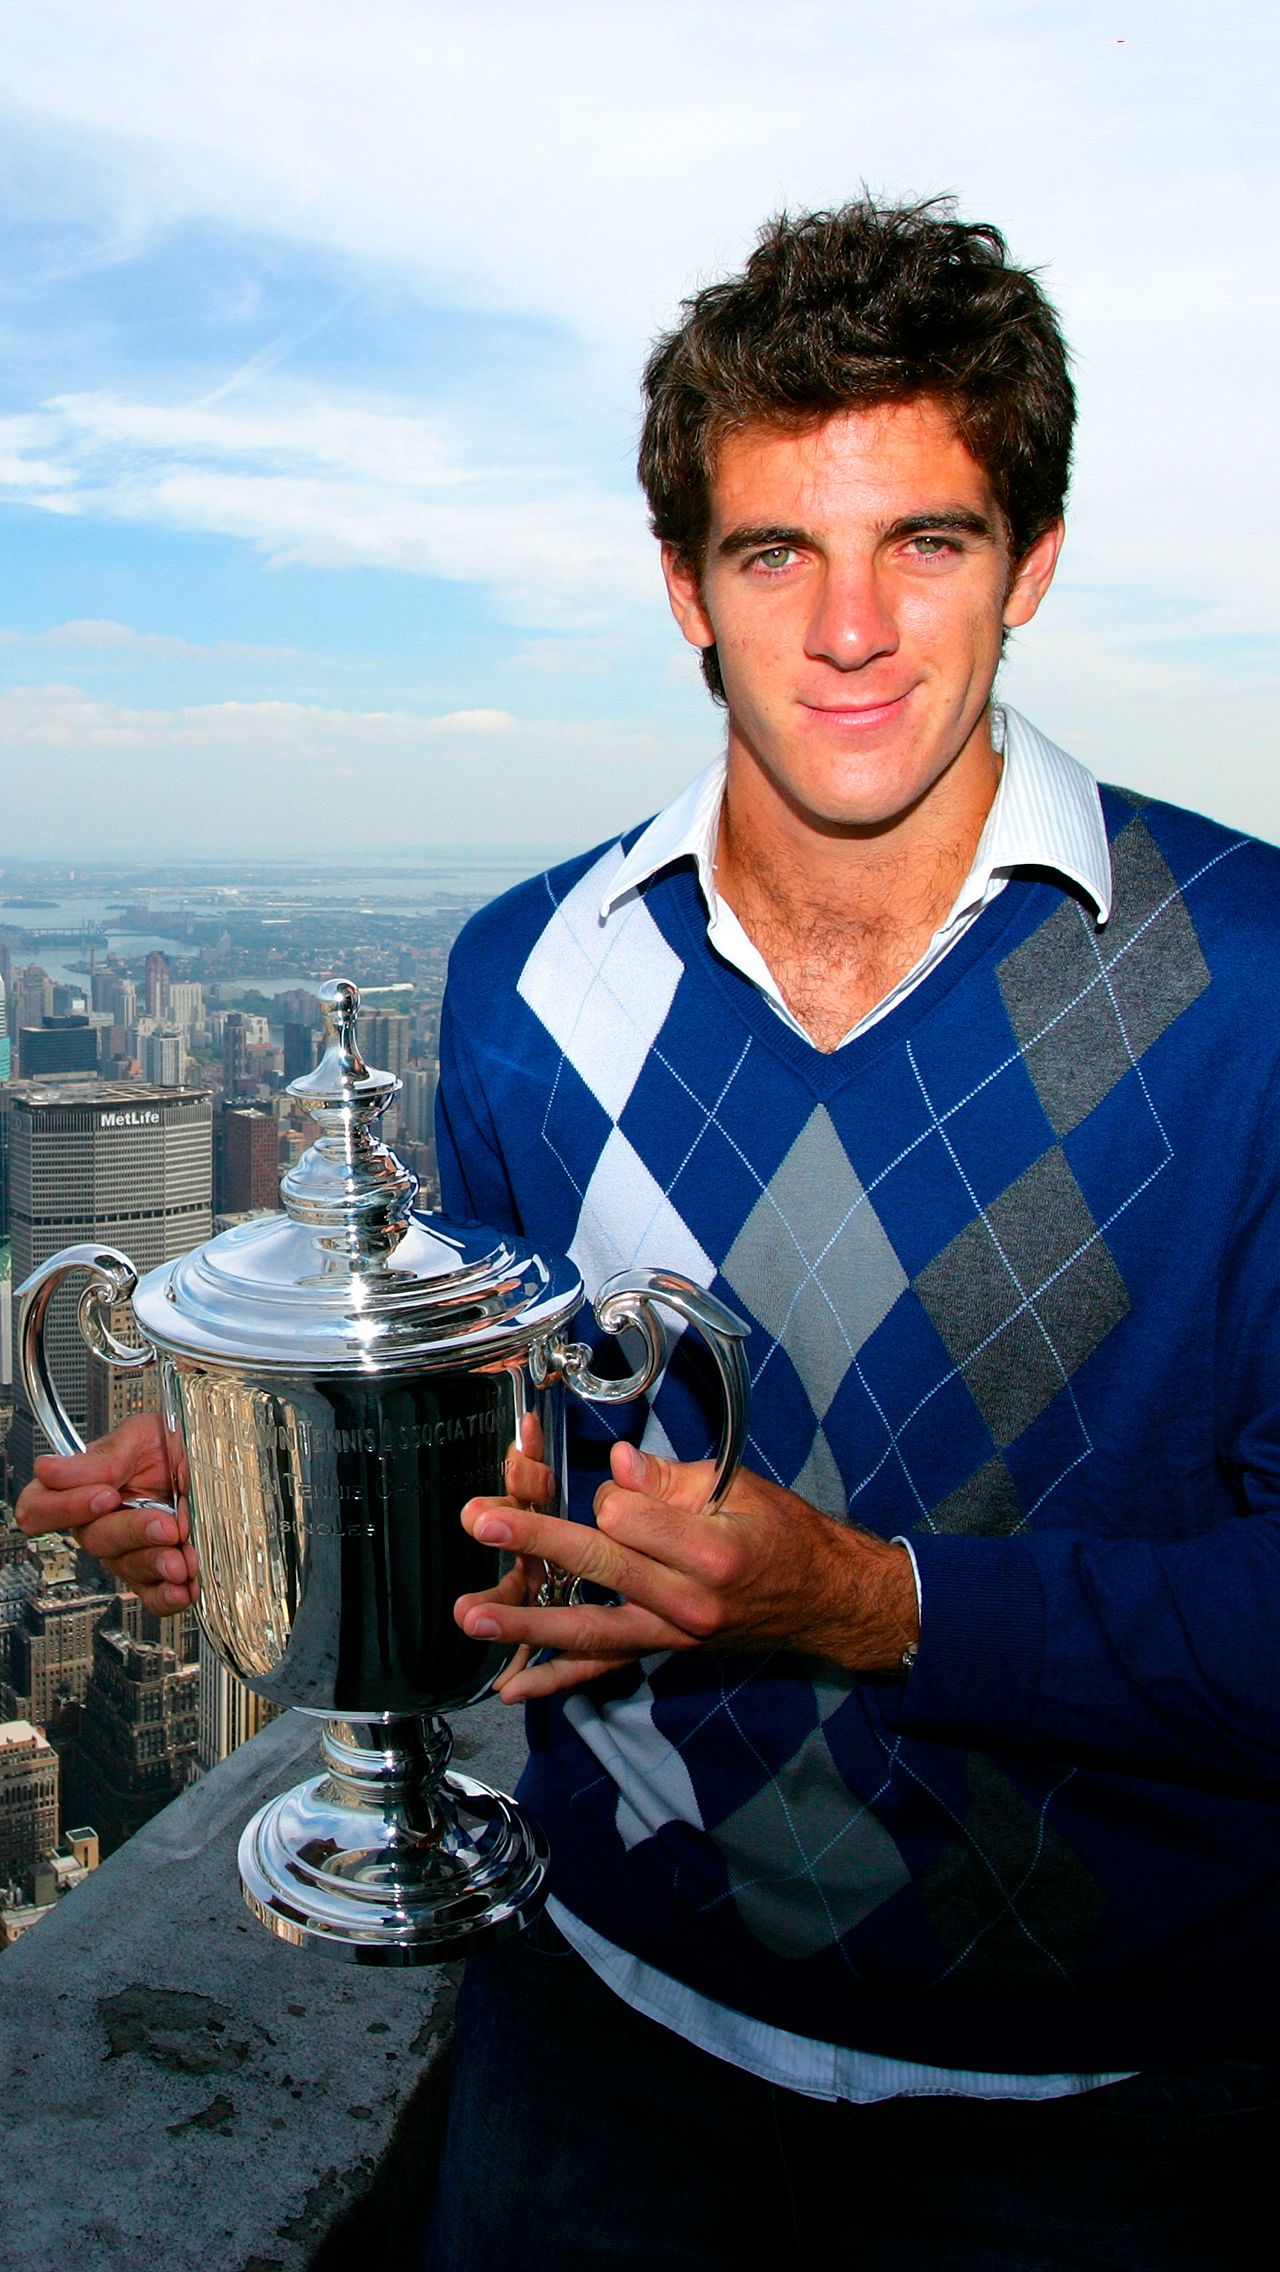 Главный победой в карьере аргентинца стал US Open – 2009, где он разгромил в полуфинале Рафаэля Надаля. А в финале в пяти сетах был повержен Роджер Федерер.